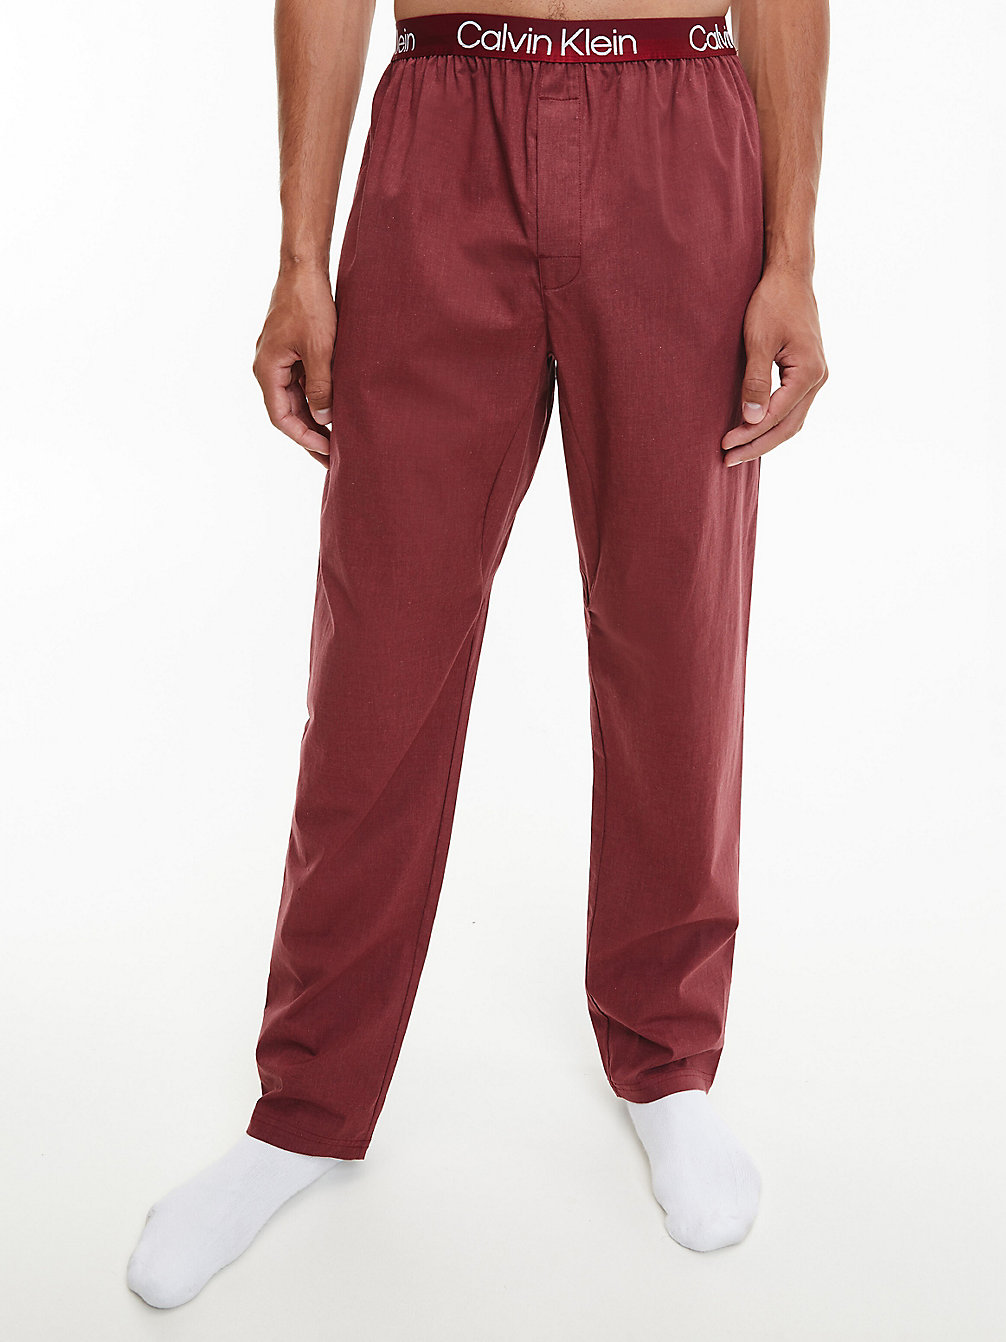 RED CARPET HEATHER > Pyjama-Hose – Modern Structure > undefined Herren - Calvin Klein